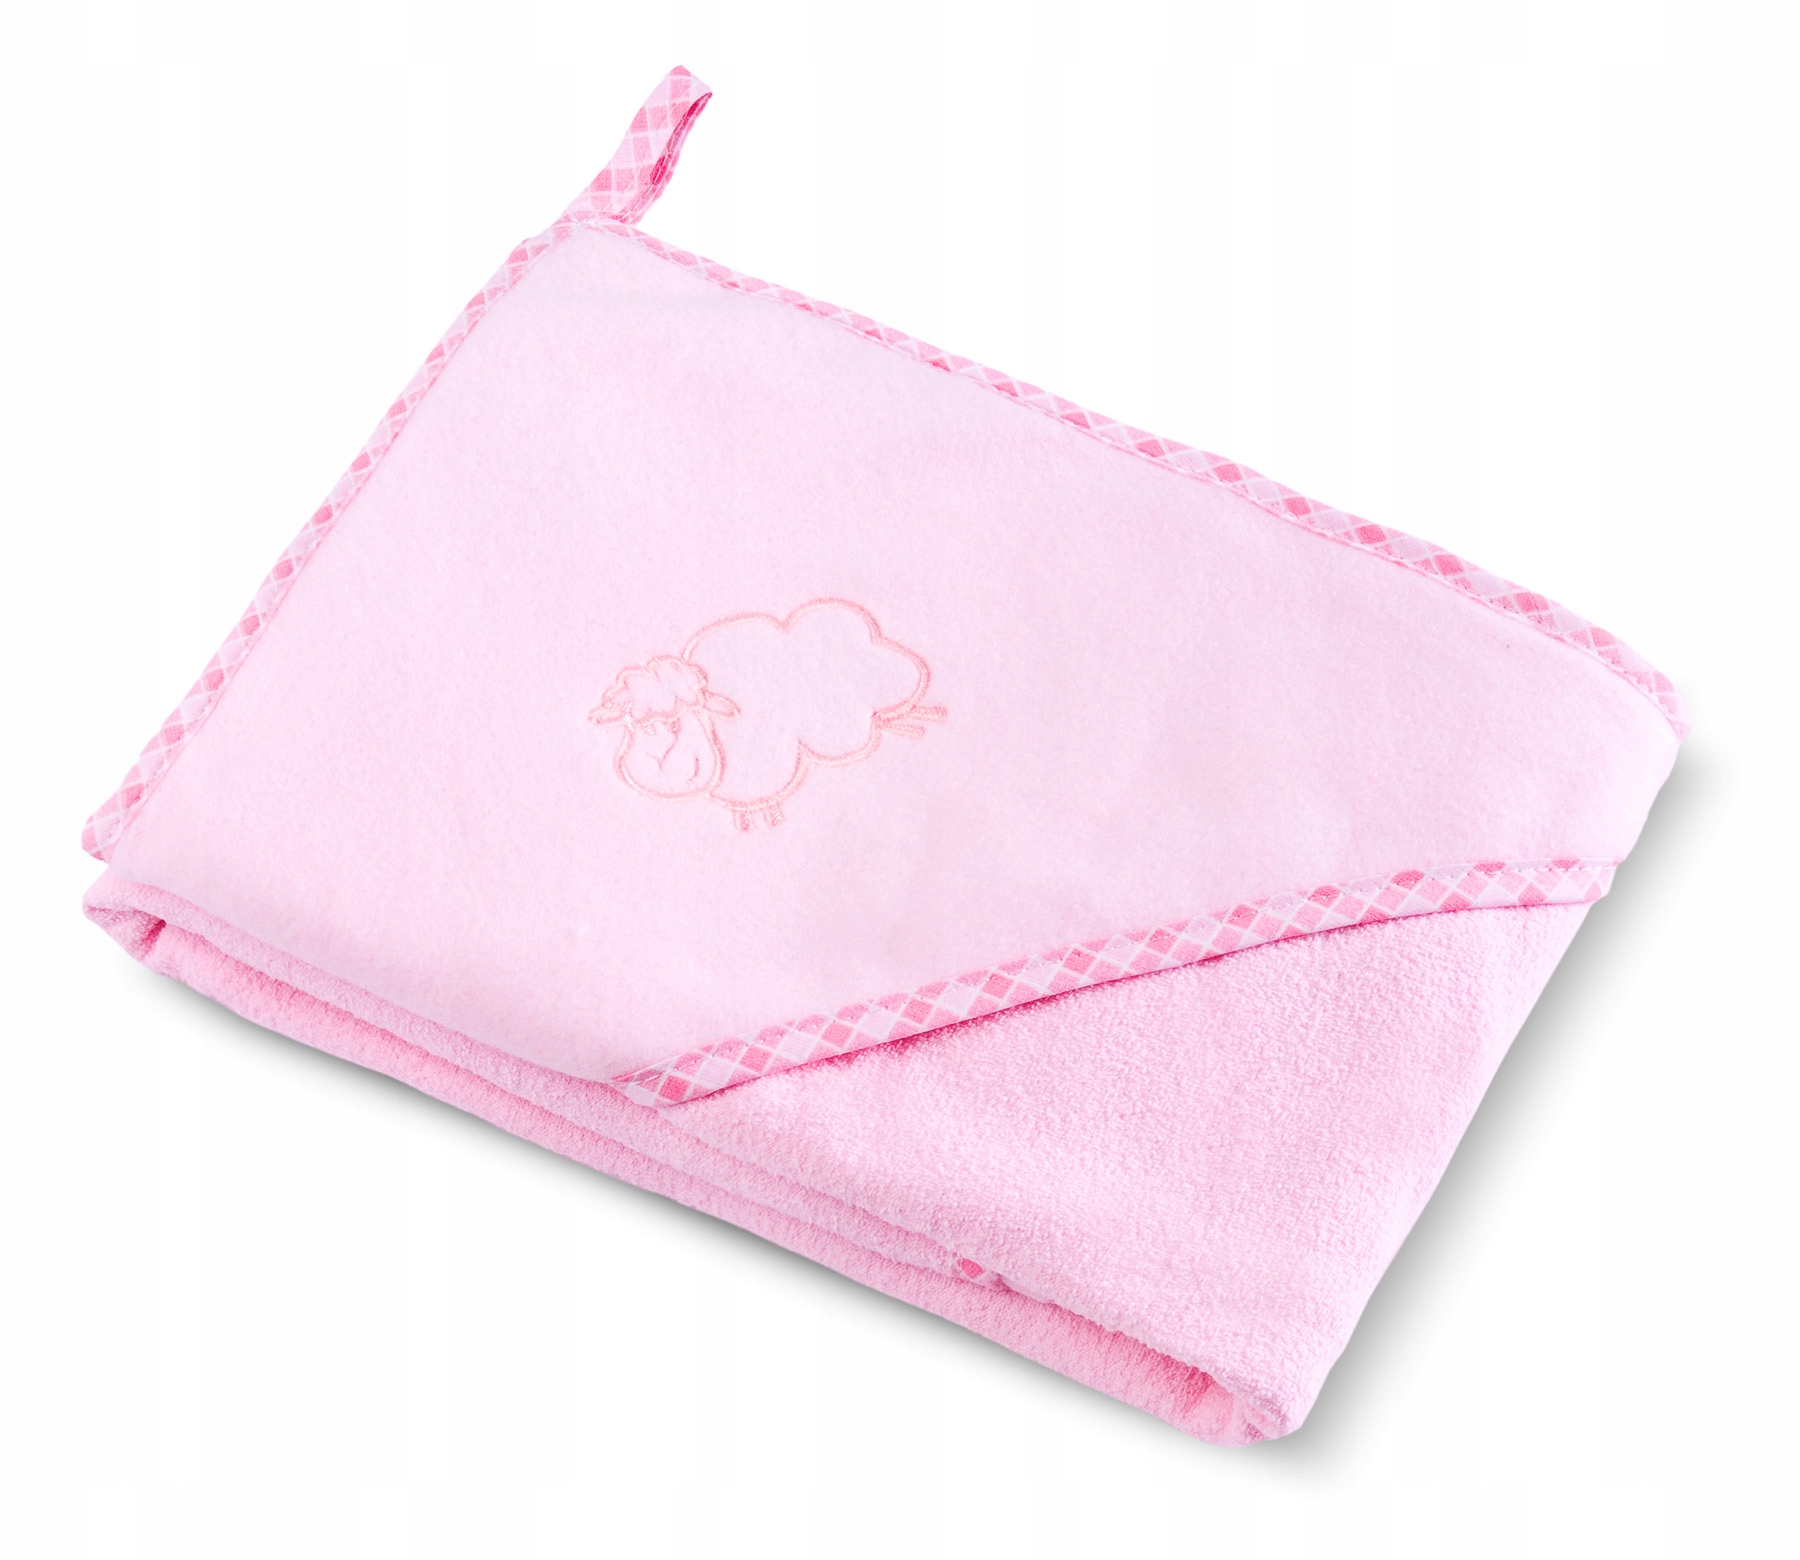 Полотенце для малыша розовое. 80 На 80 полотенце. Полотенце уголок 80х80. Шапка полотенце для детей махровая. Полотенце 80 на 80